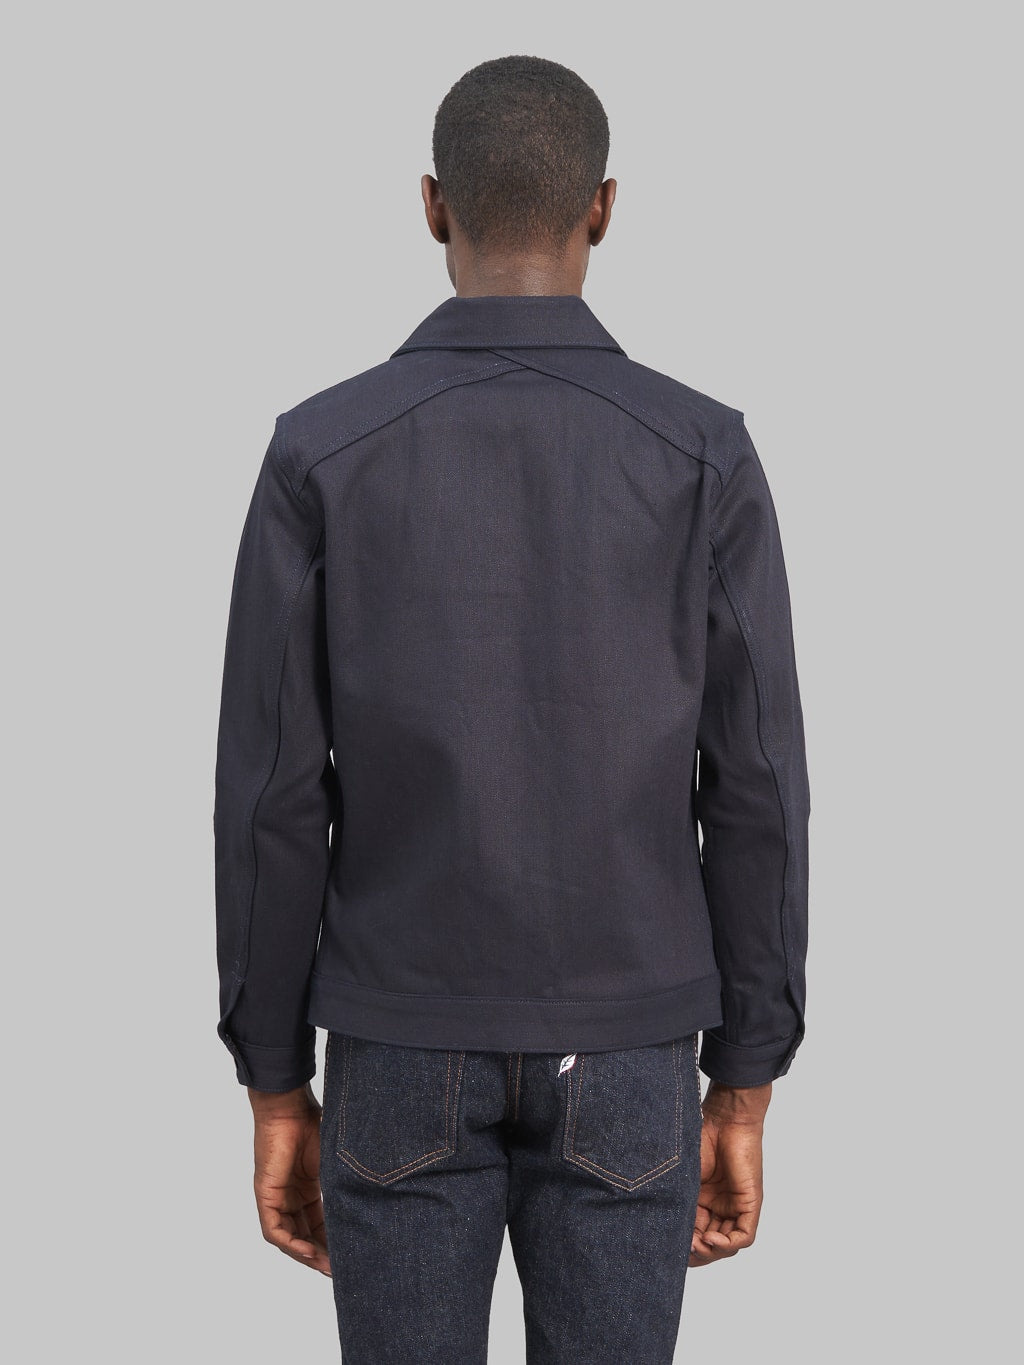 3sixteen type III denim jacket shadow selvedge indigo back fit